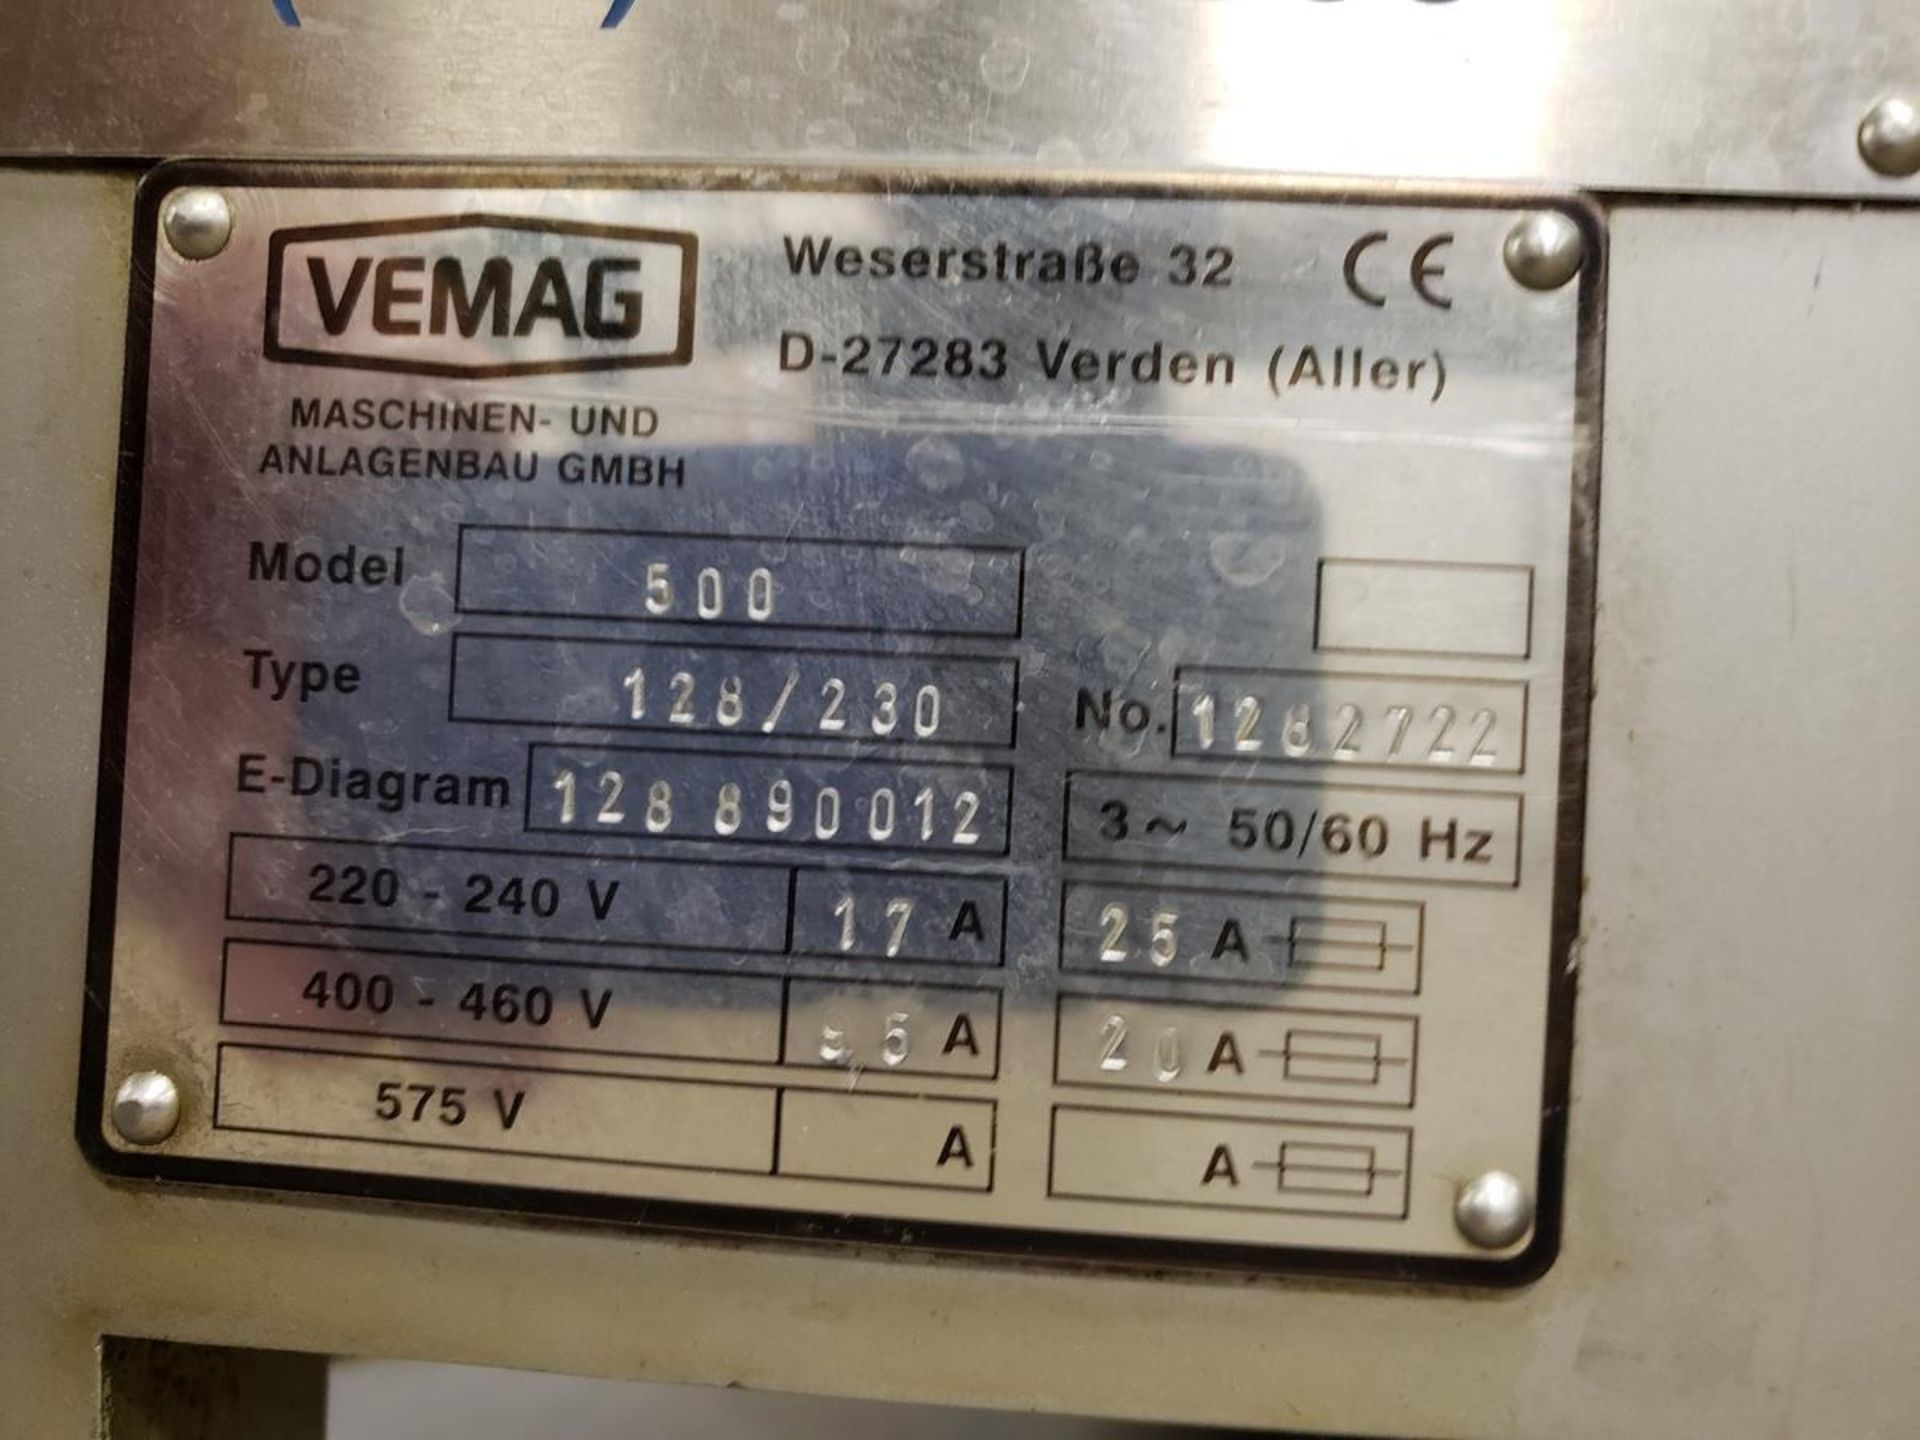 Reiser Vemag 500 Vacuum Portioner / Stuffer, M# 500, Type 128/230, S/ |Subj to Bulk | Rig Fee: $650 - Image 2 of 6